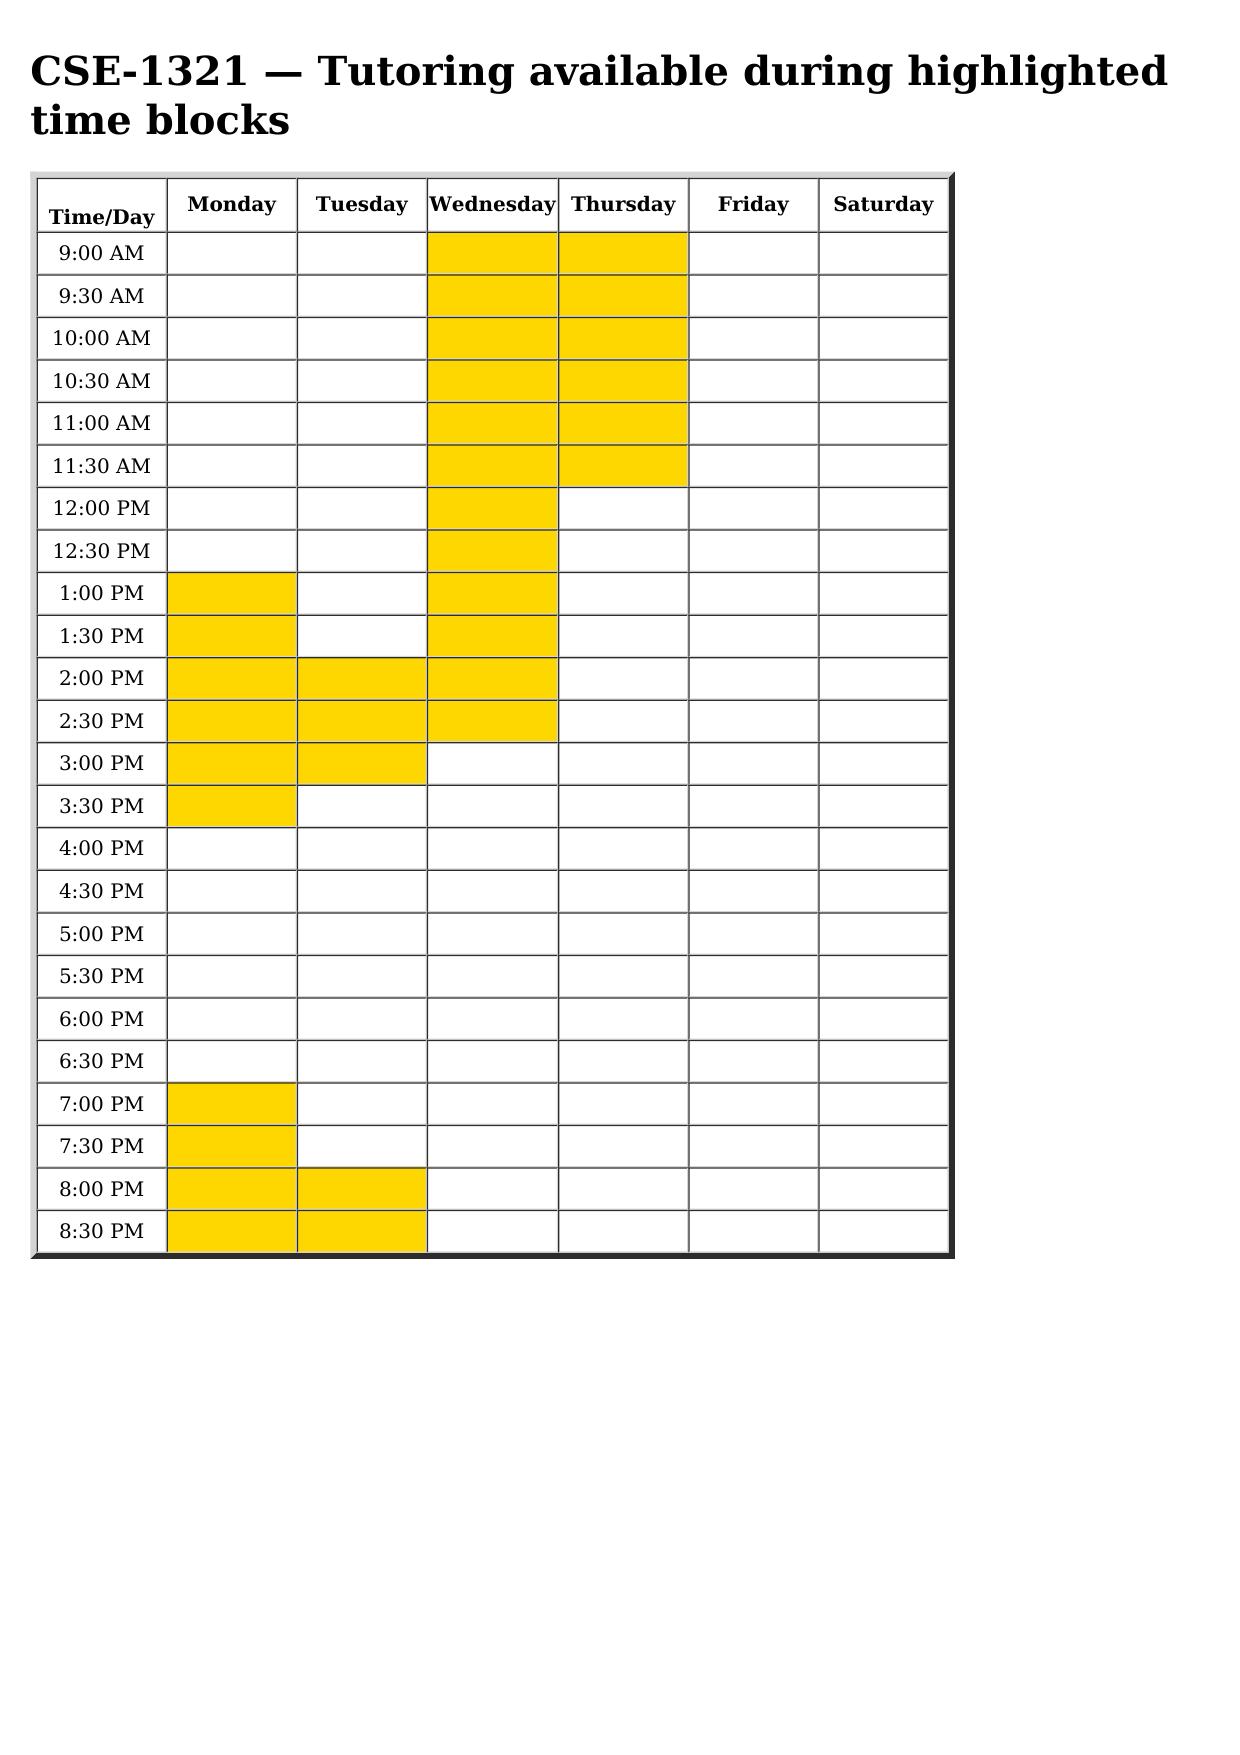 cse 1321 schedule